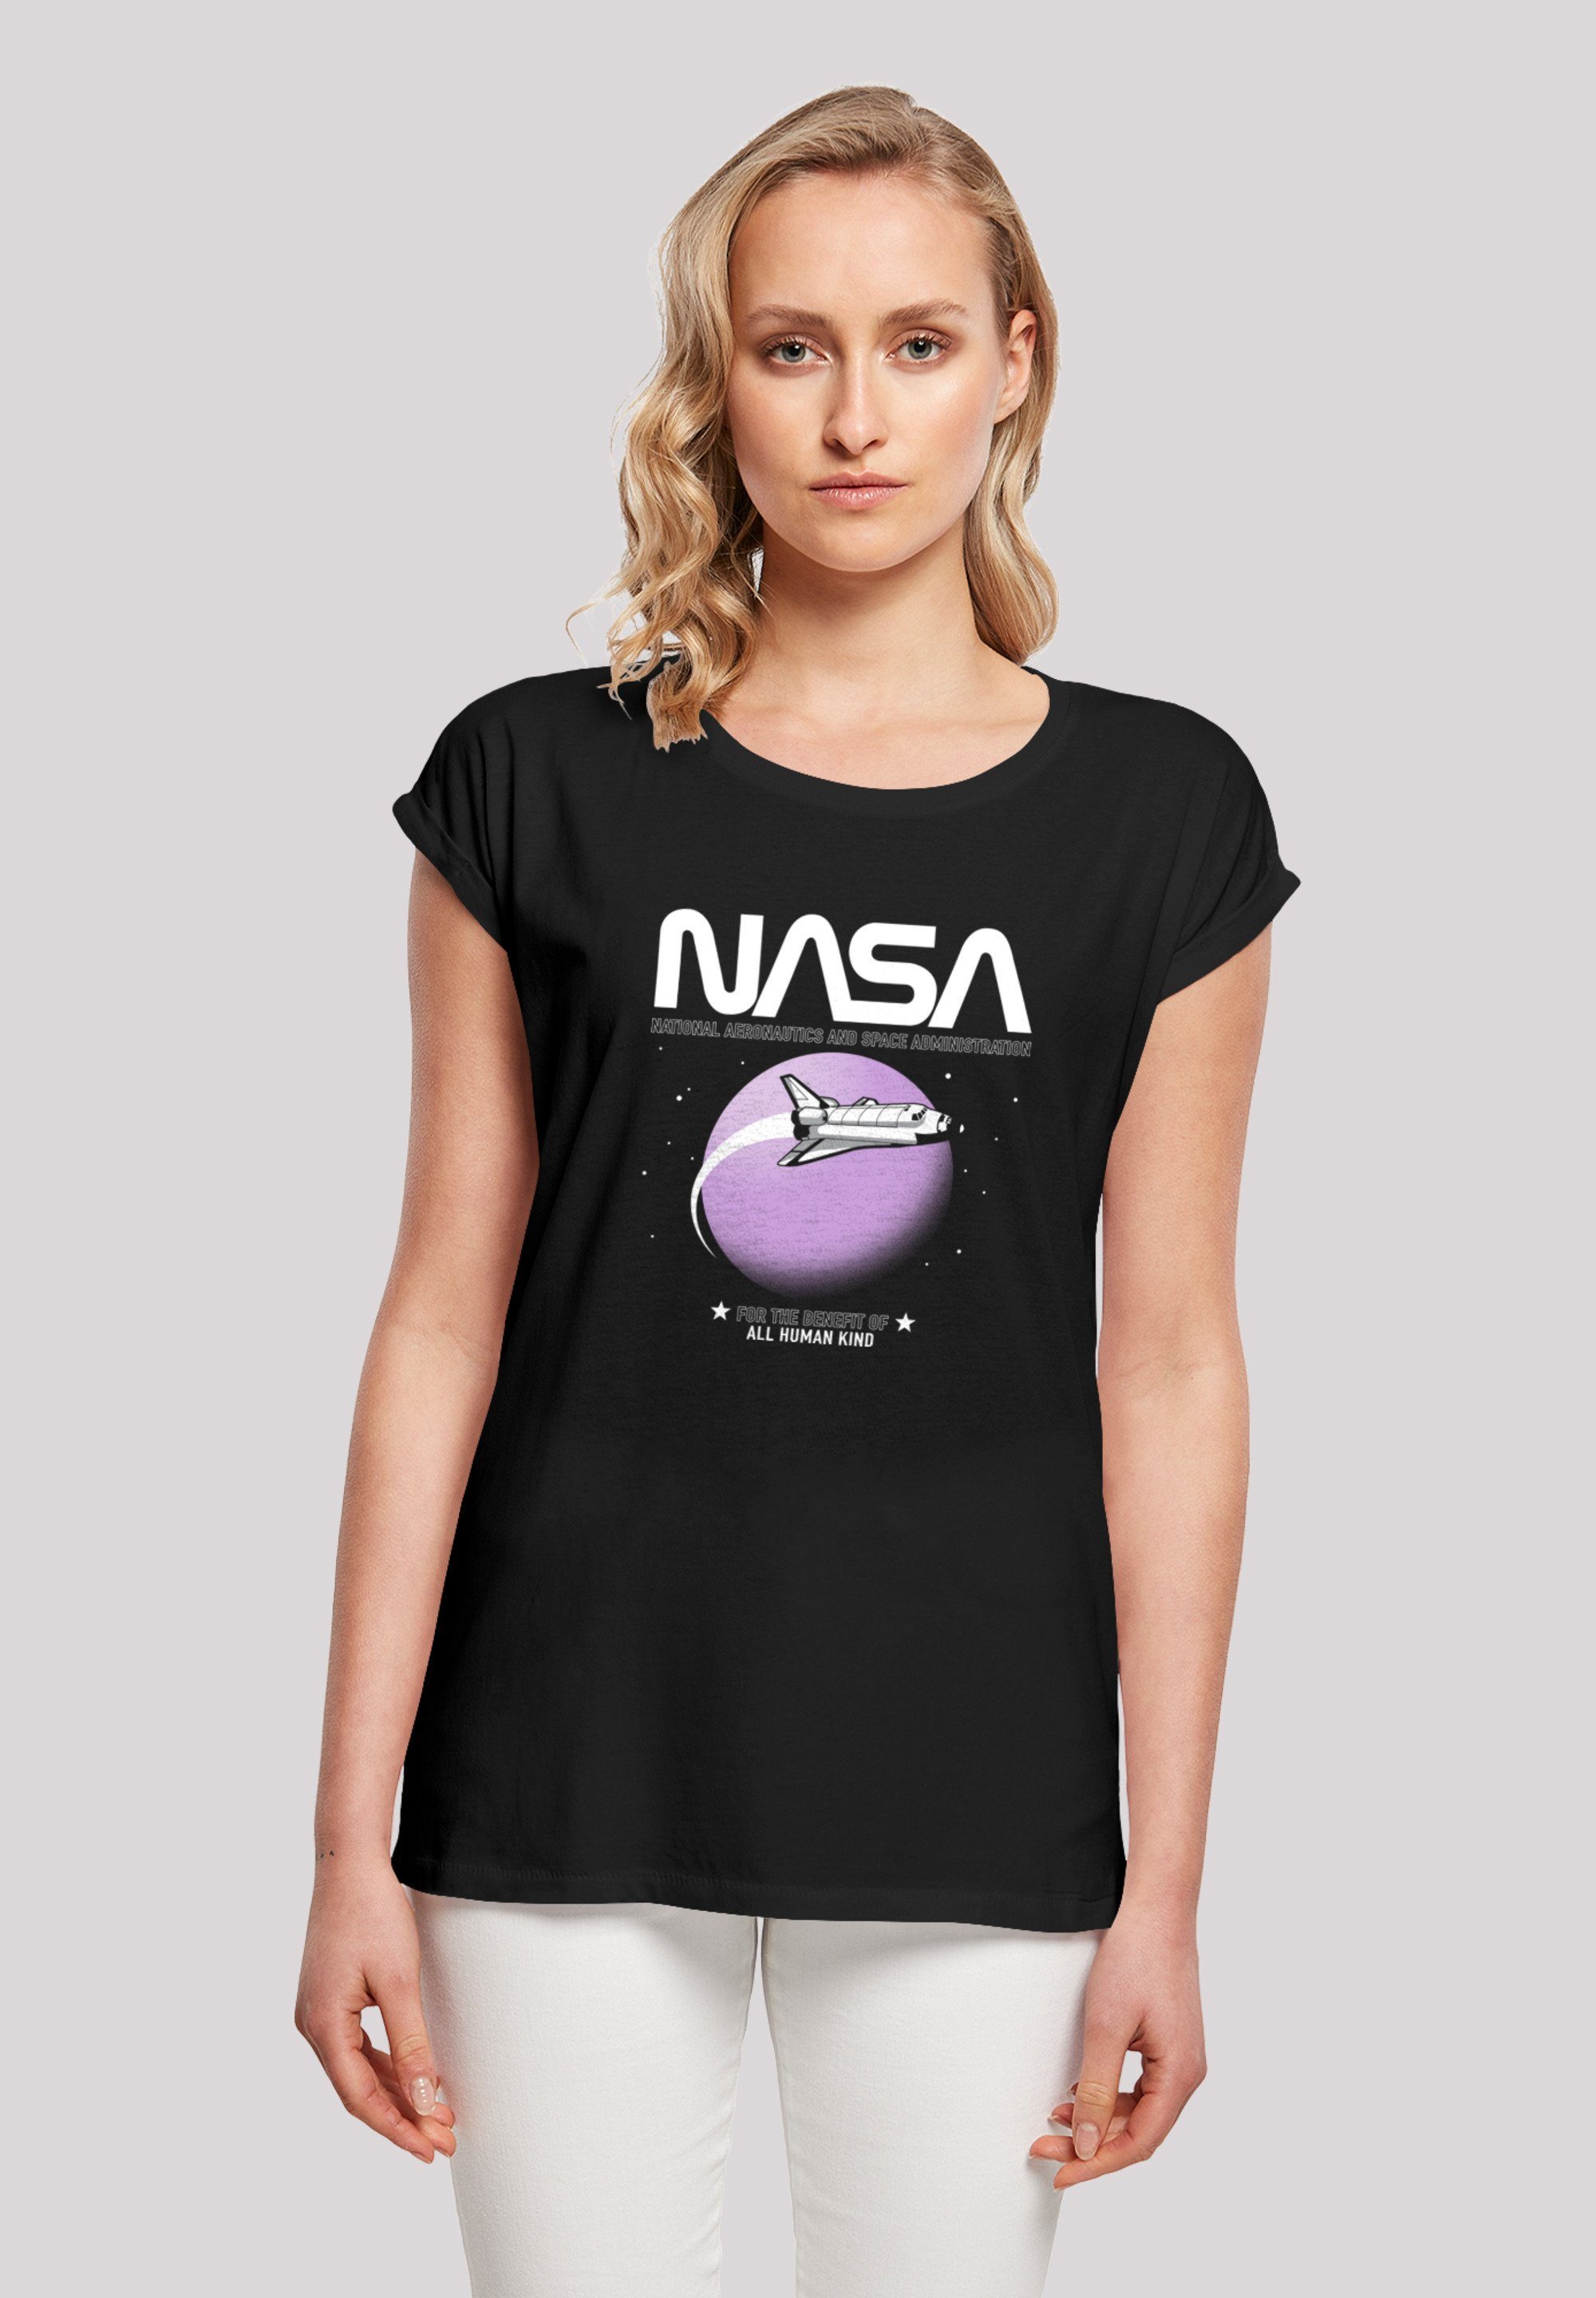 Orbit\' ist NASA T-Shirt 170 Model Größe groß trägt Shuttle und Das cm Print, F4NT4STIC S